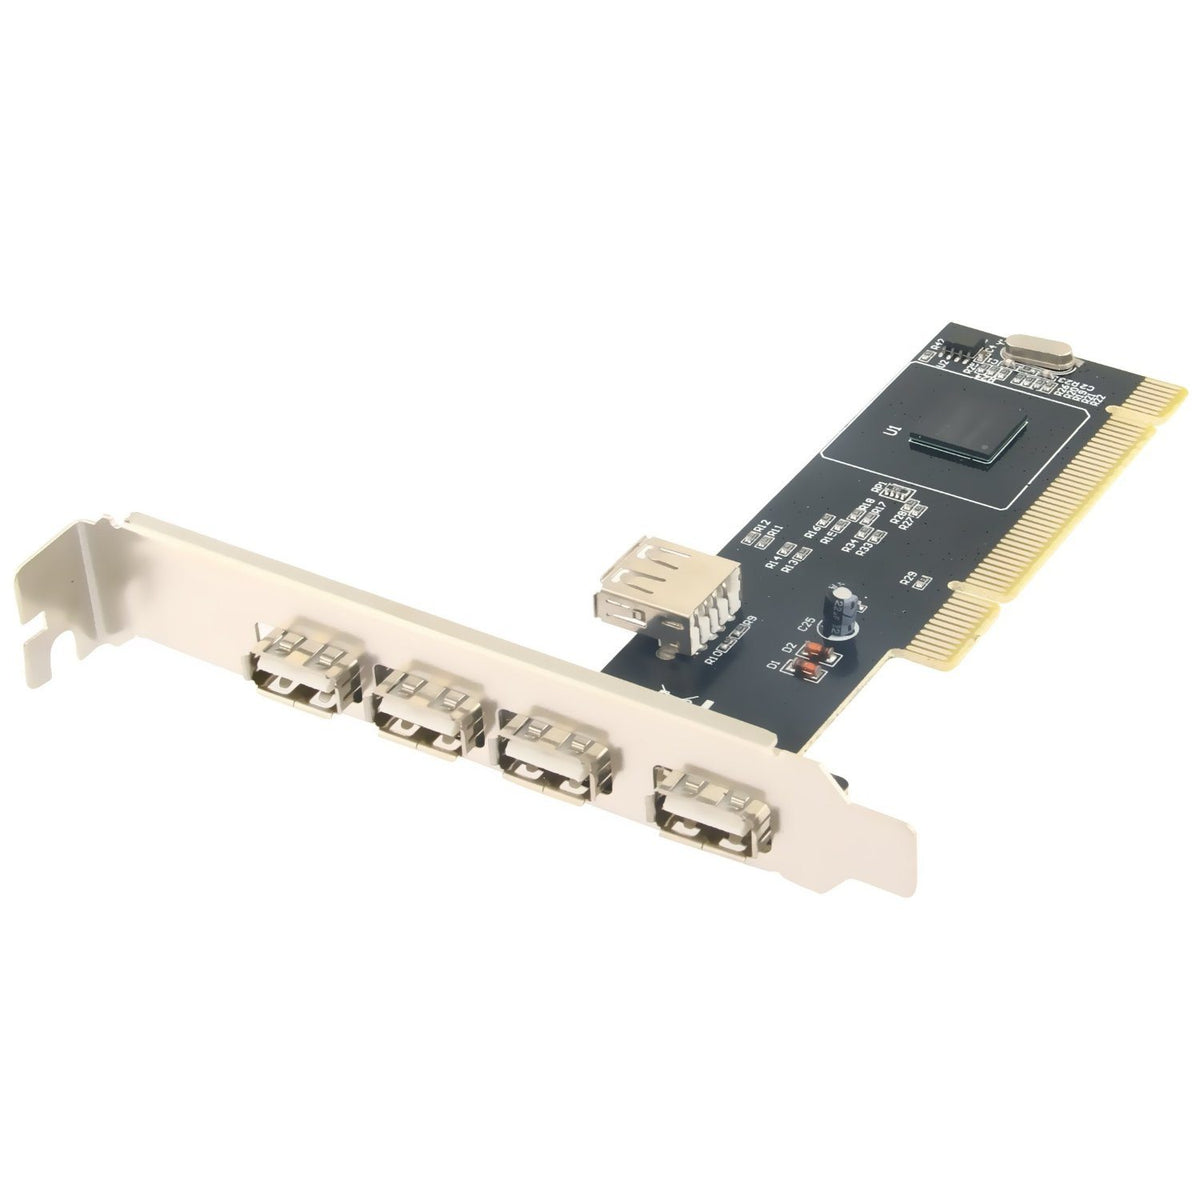 5 Port USB 2.0 PCI Hi Speed Card Adapter